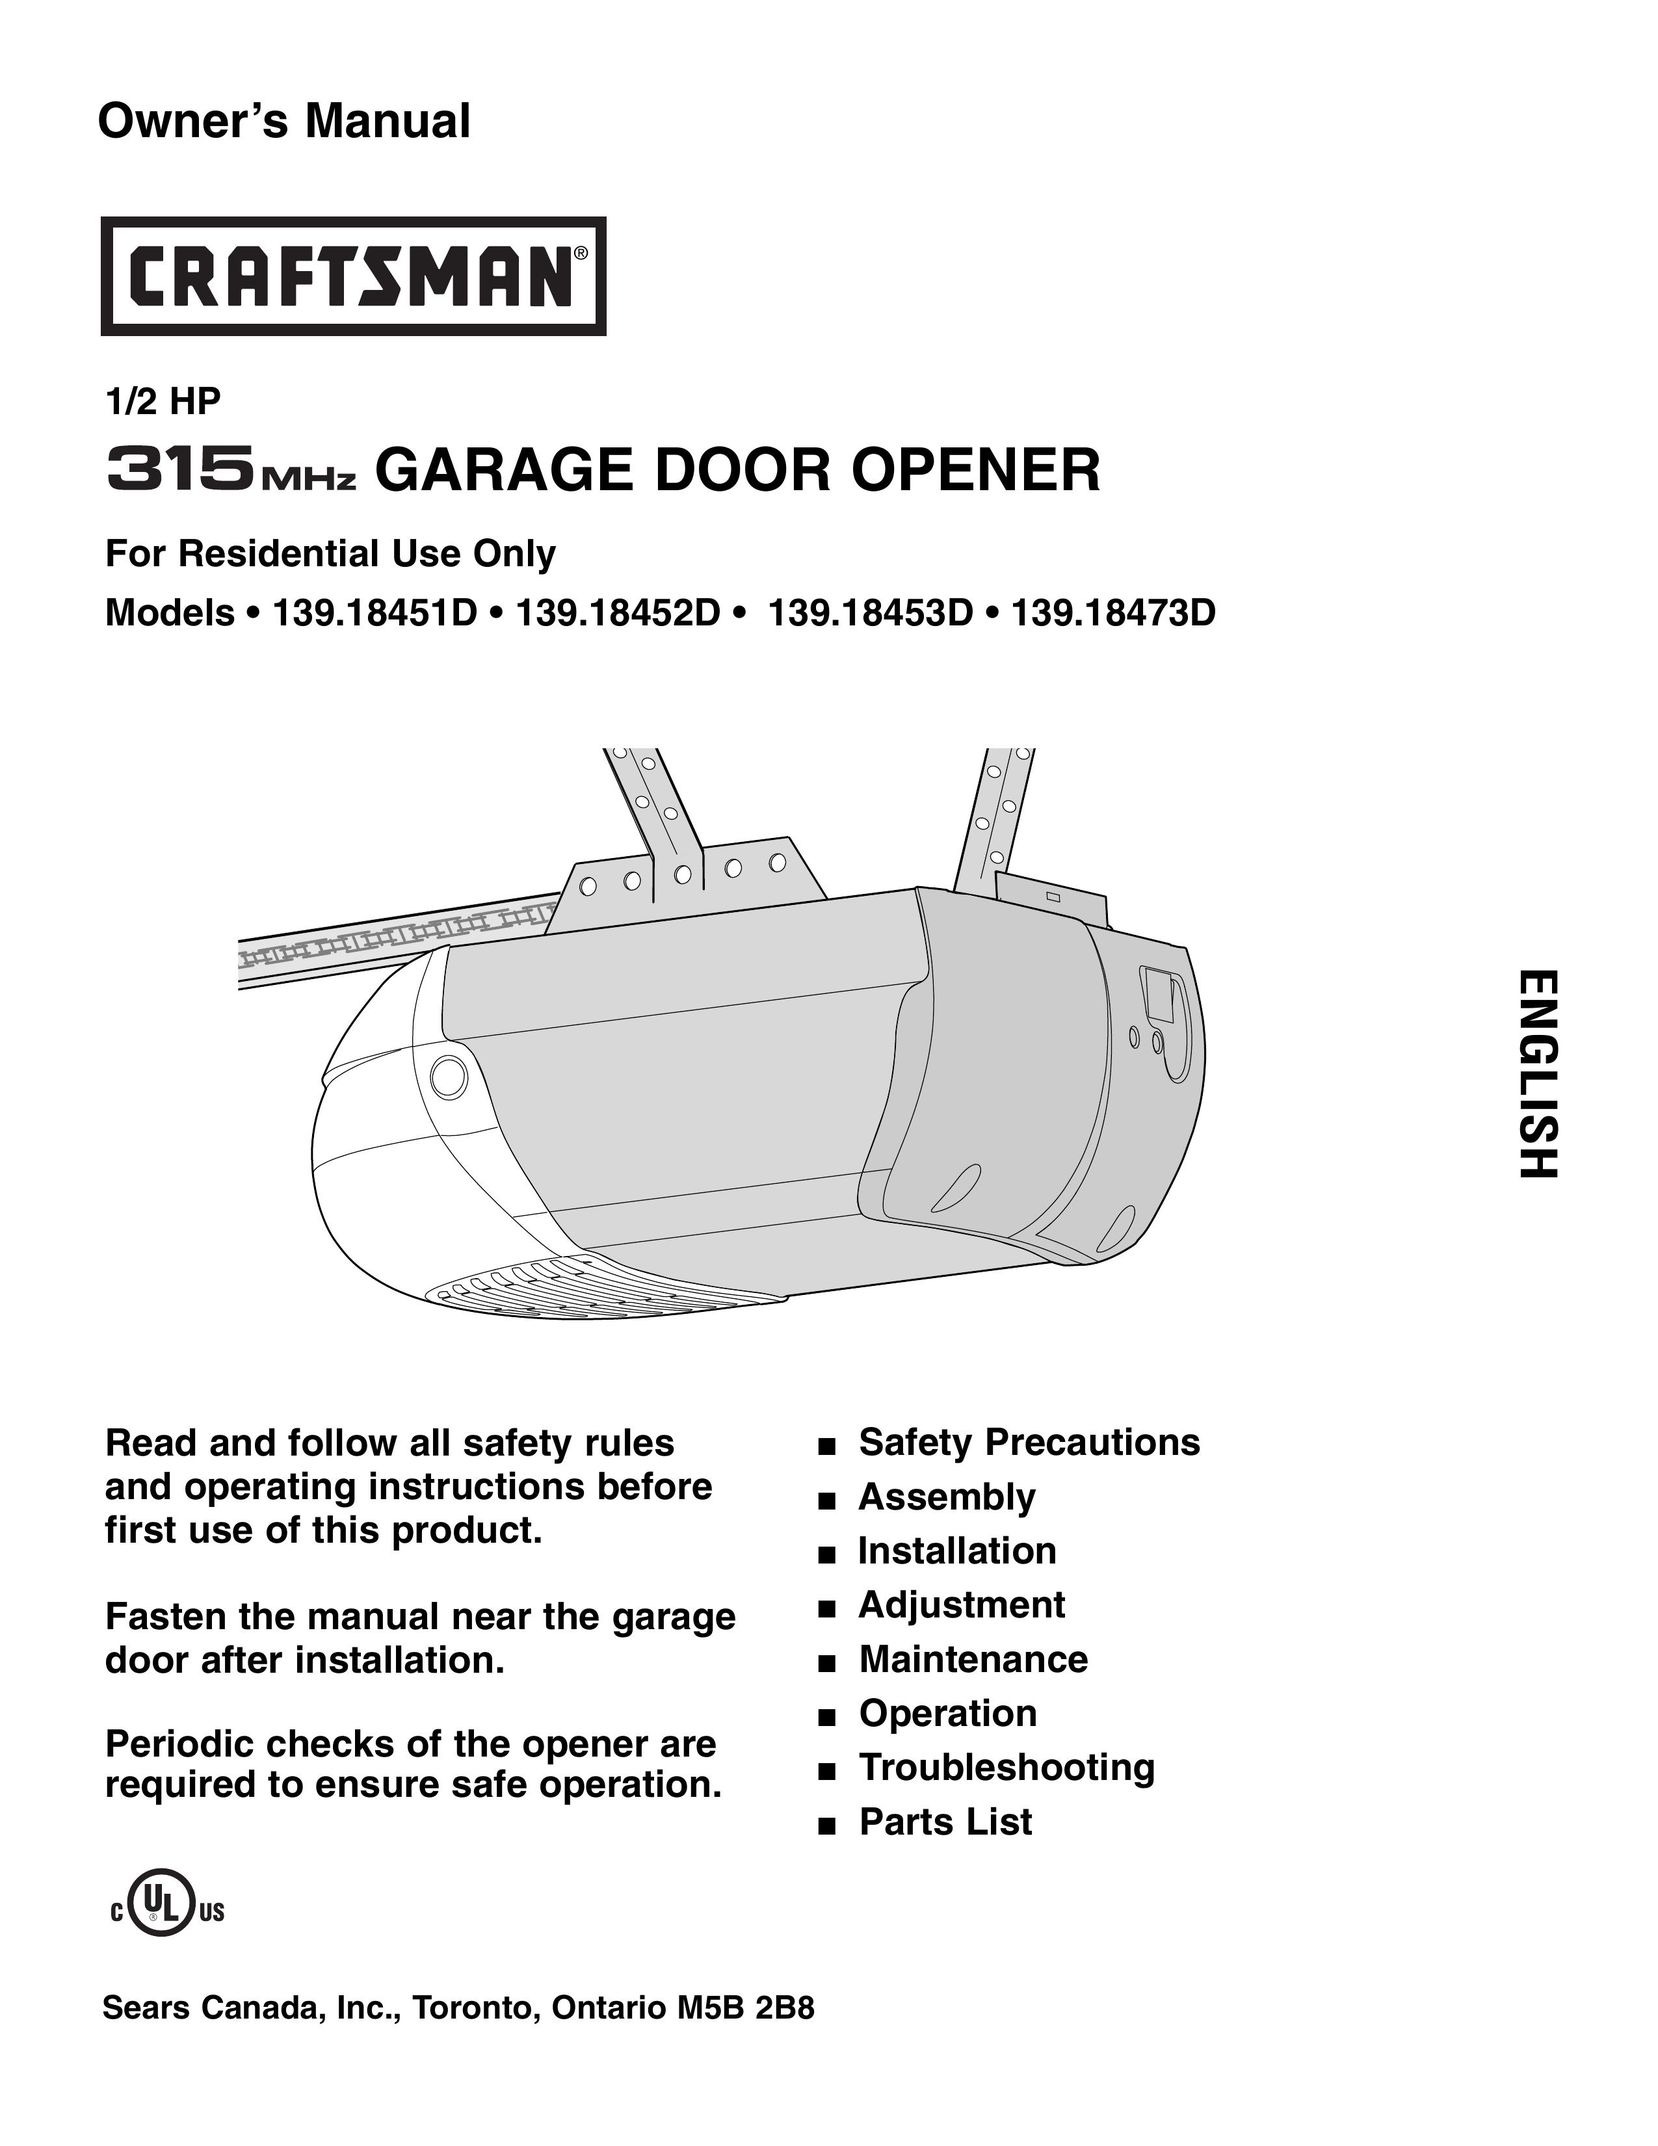 Craftsman 139.18452D Garage Door Opener User Manual